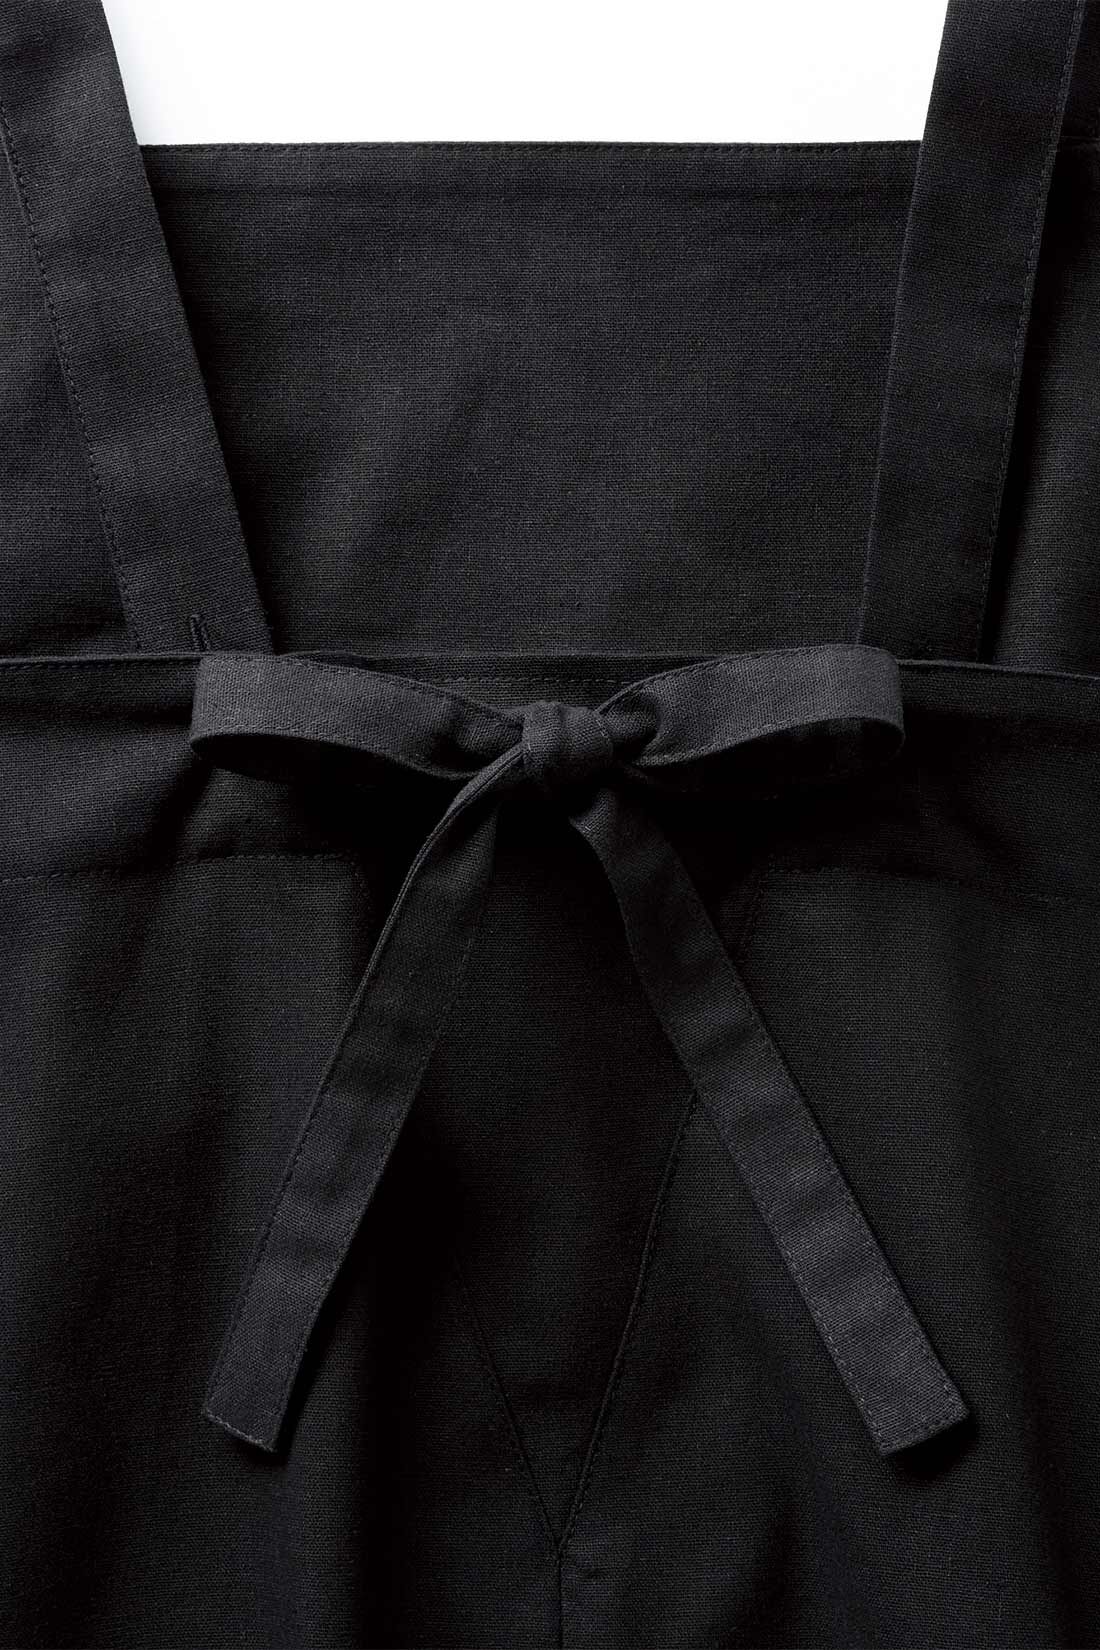 シロップ. 特急便|スタイリスト明石恵美子さん×シロップ． コーディネートの幅が広がるリネン混のジャンパースカート〈ブラック〉|リボンは取り外し可。ストラップをクロスさせればデザインのアレンジも。